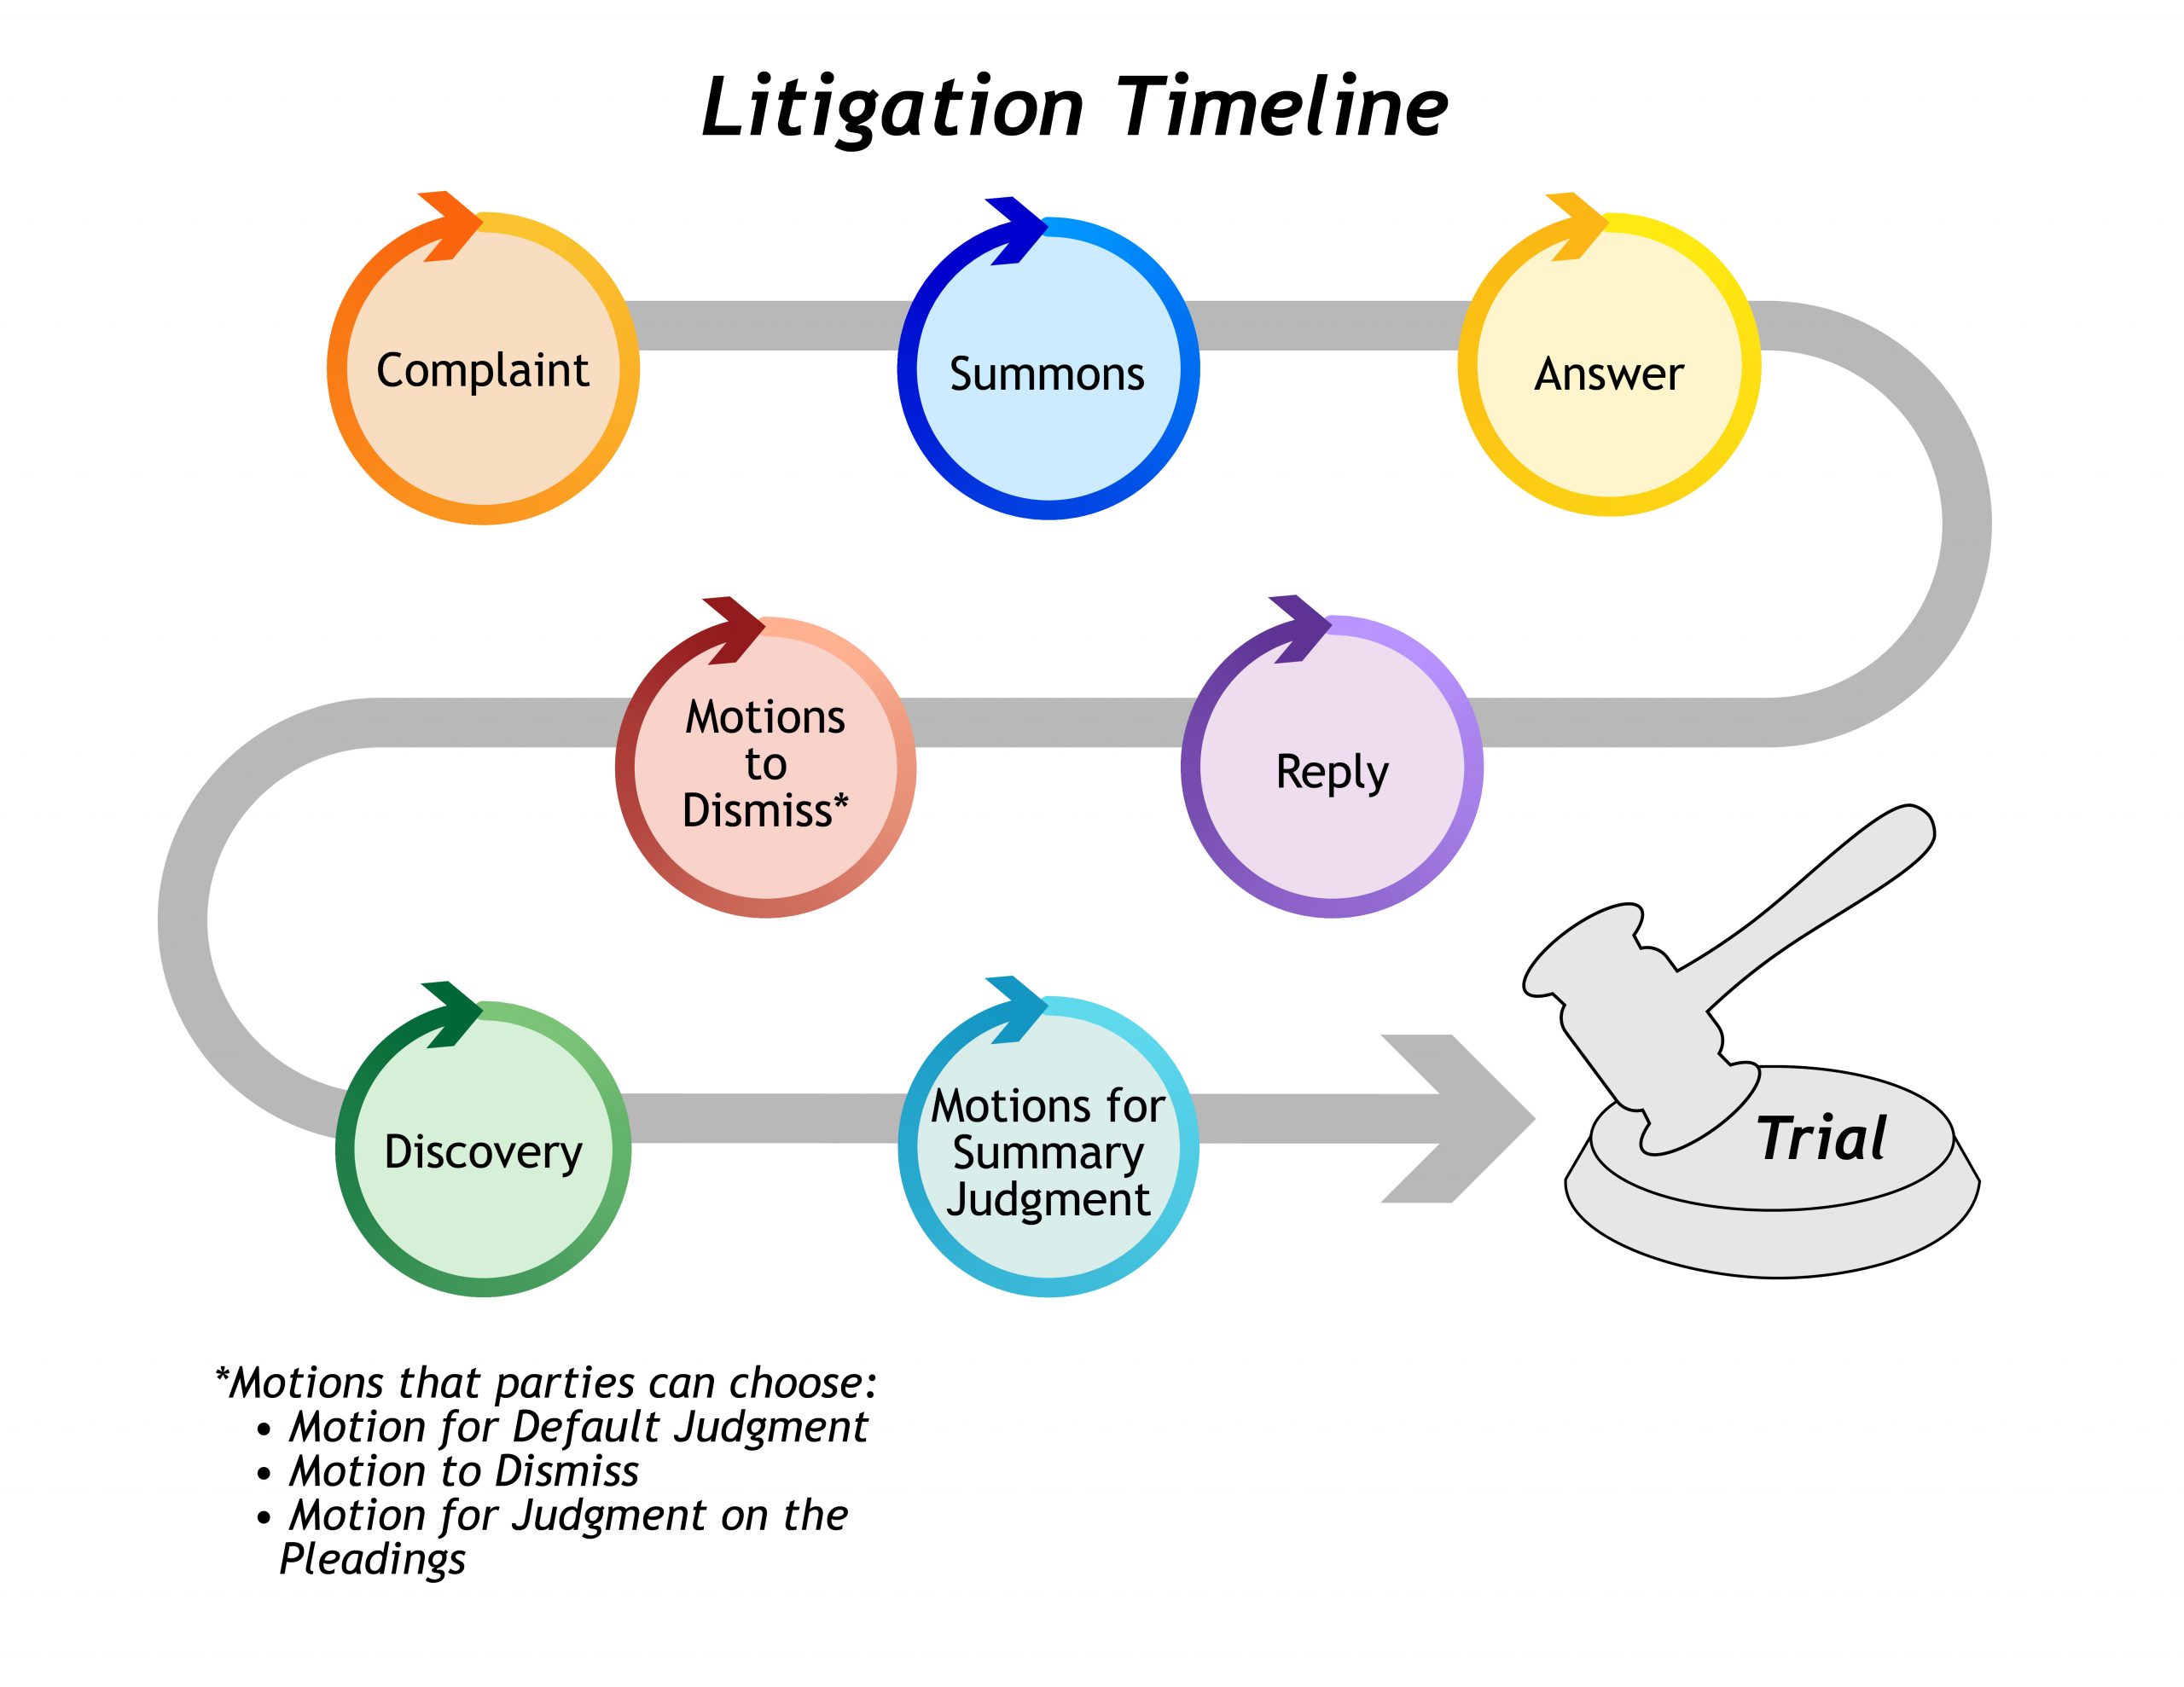 Cronograma del litigio desde la denuncia legal hasta el juicio